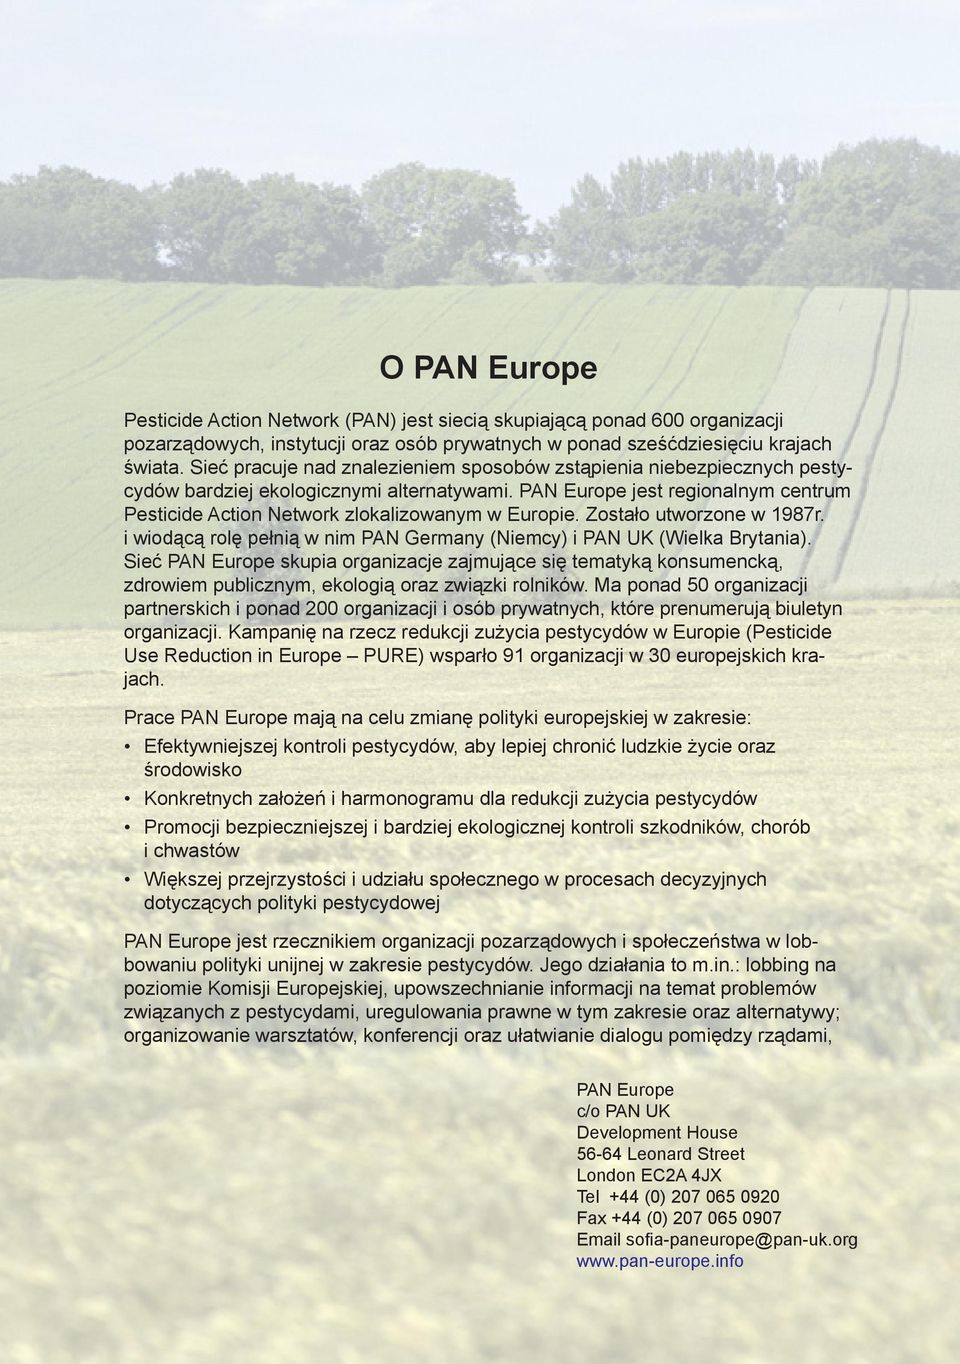 PAN Europe jest regionalnym centrum Pesticide Action Network zlokalizowanym w Europie. Zostało utworzone w 1987r. i wiodącą rolę pełnią w nim PAN Germany (Niemcy) i PAN UK (Wielka Brytania).